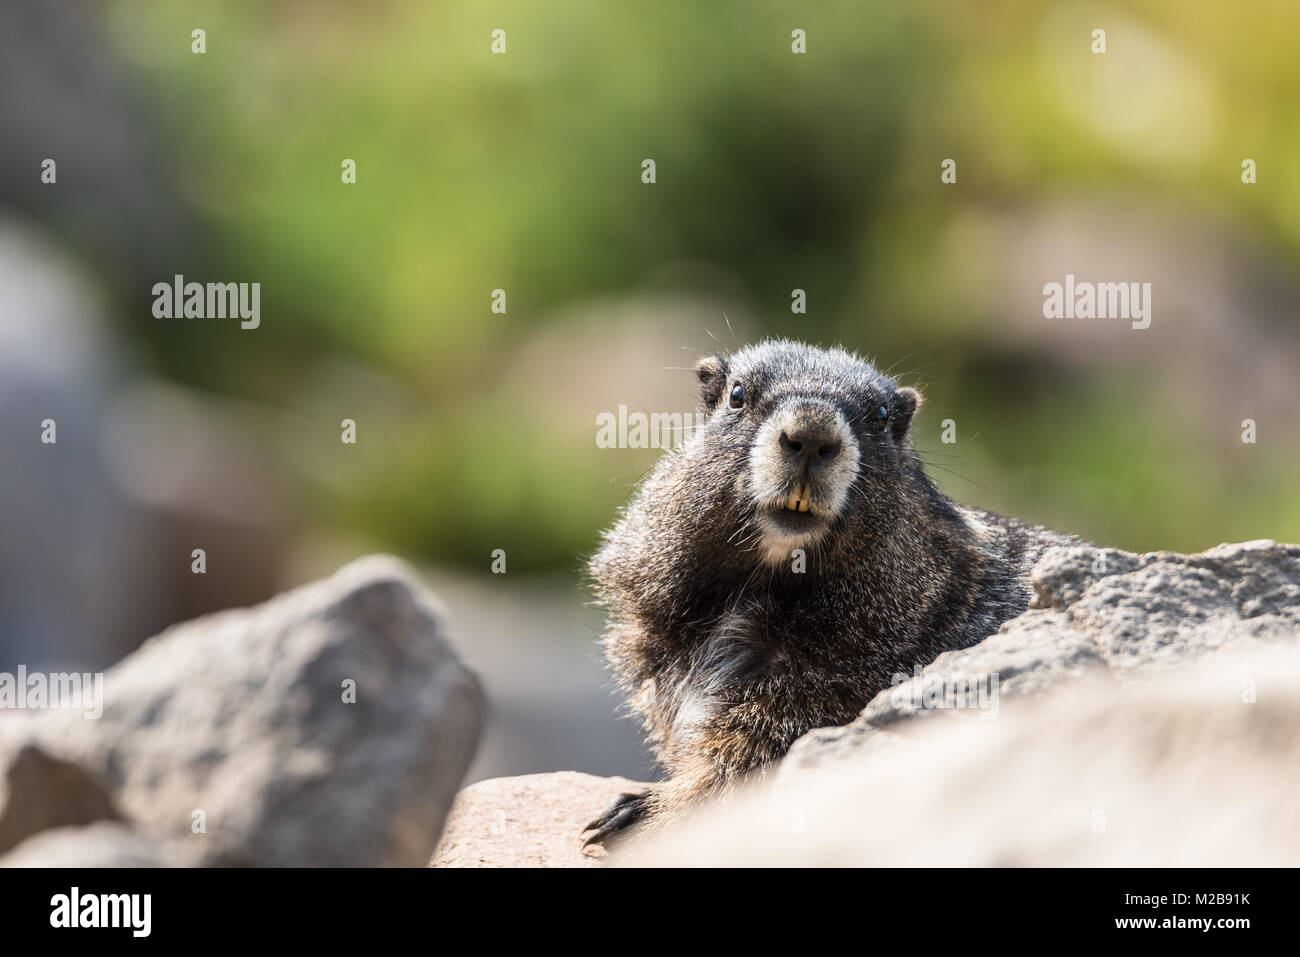 Carino marmotta che mostra i suoi denti mentre è seduto su una roccia Foto Stock